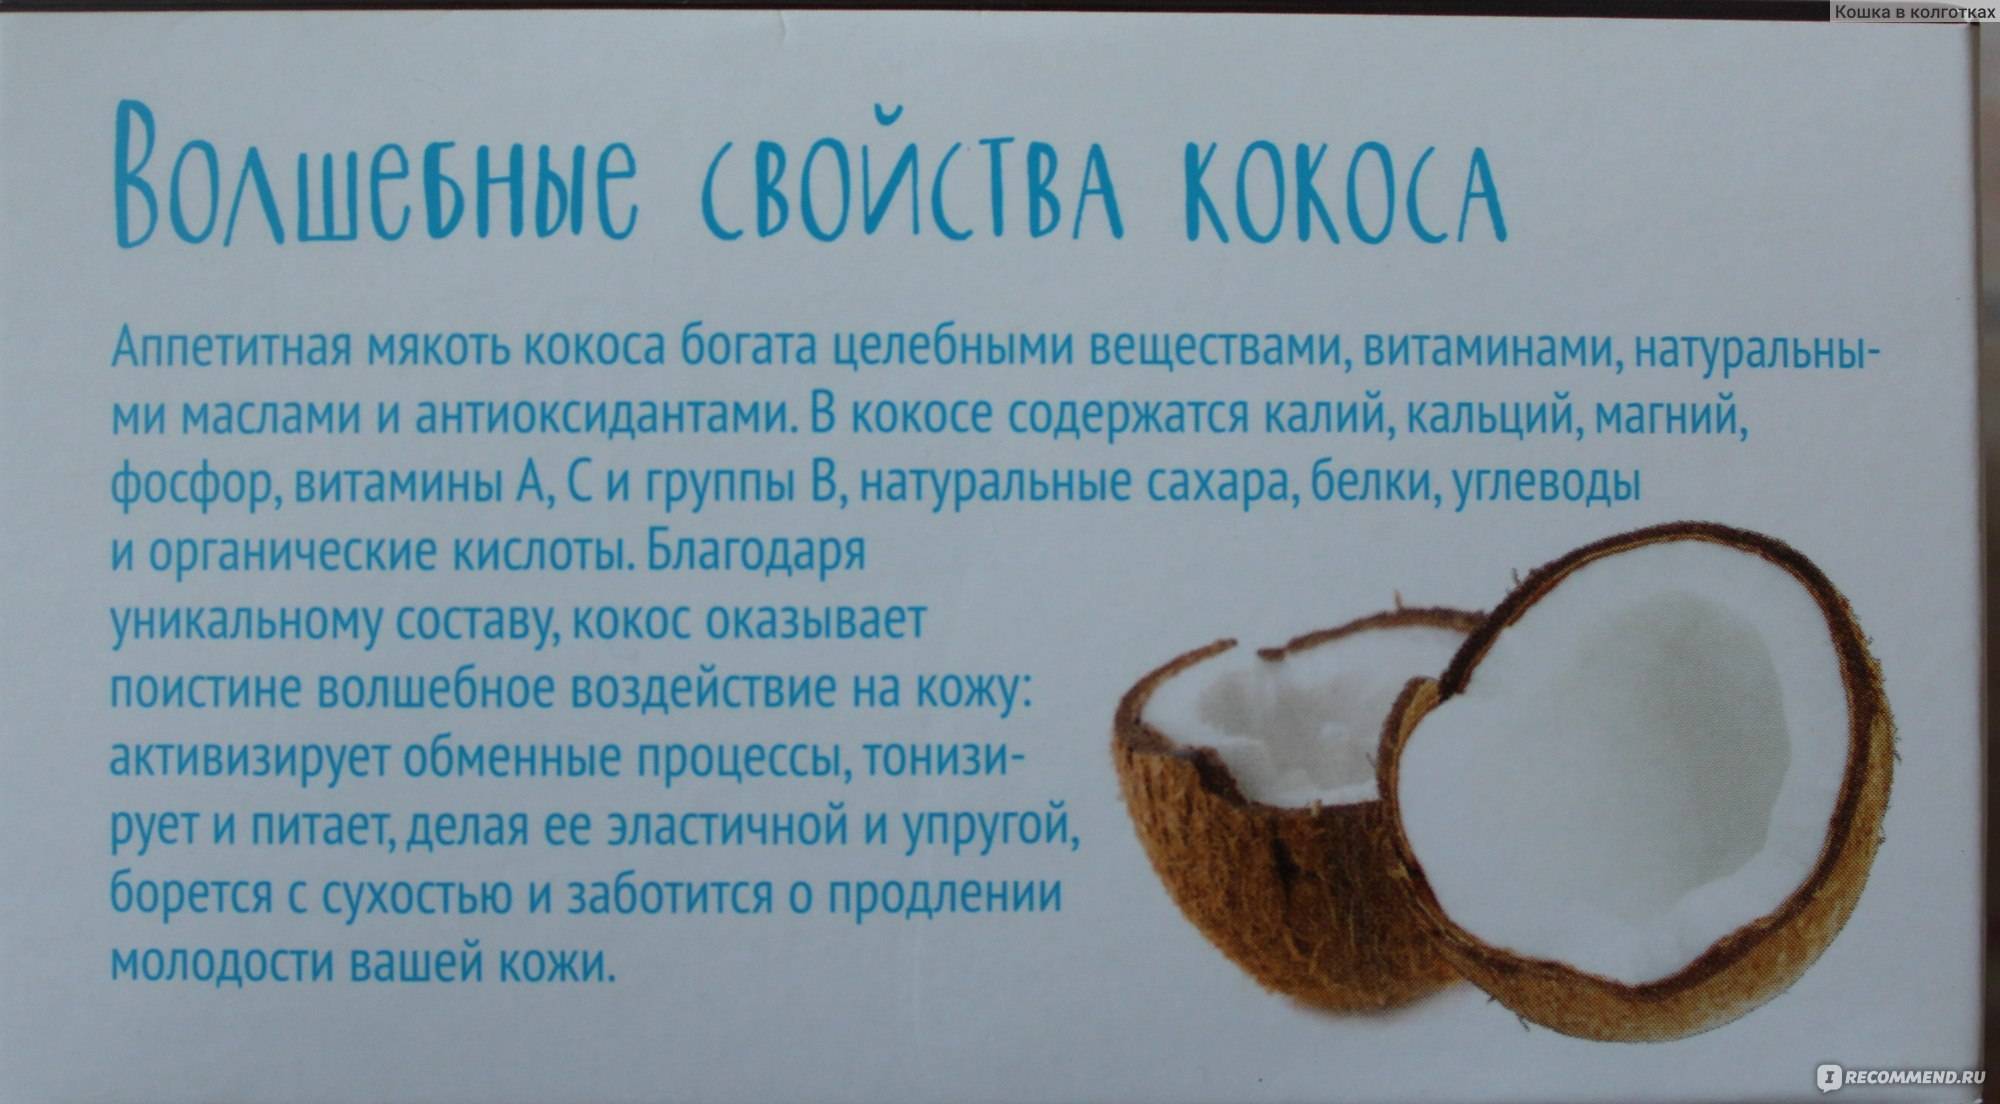 Мякоть кокоса: польза и вред для организма мужчин, женщин, применение